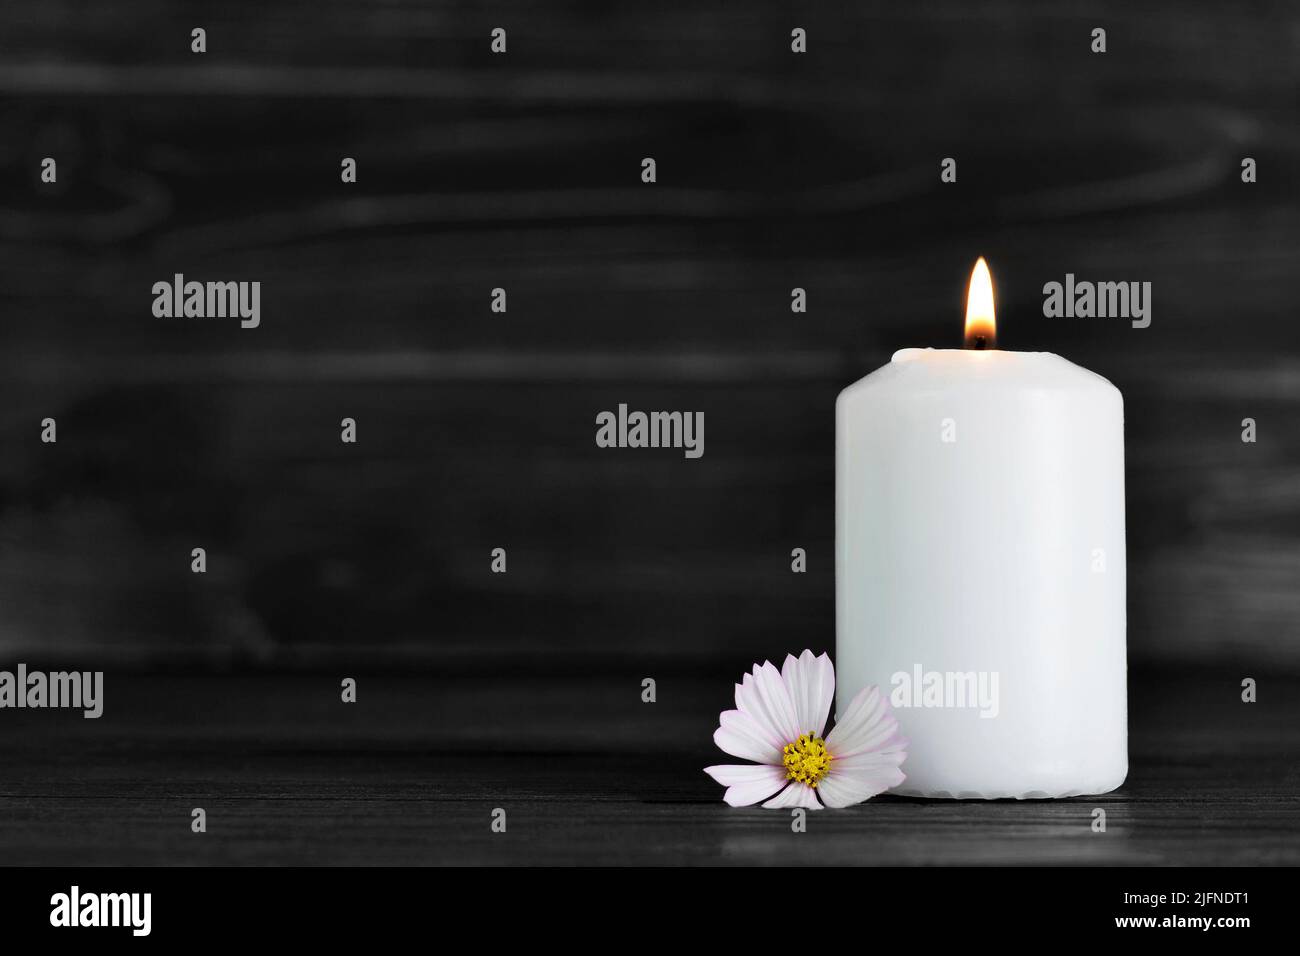 Scheda di memoria candela immagini e fotografie stock ad alta risoluzione -  Alamy